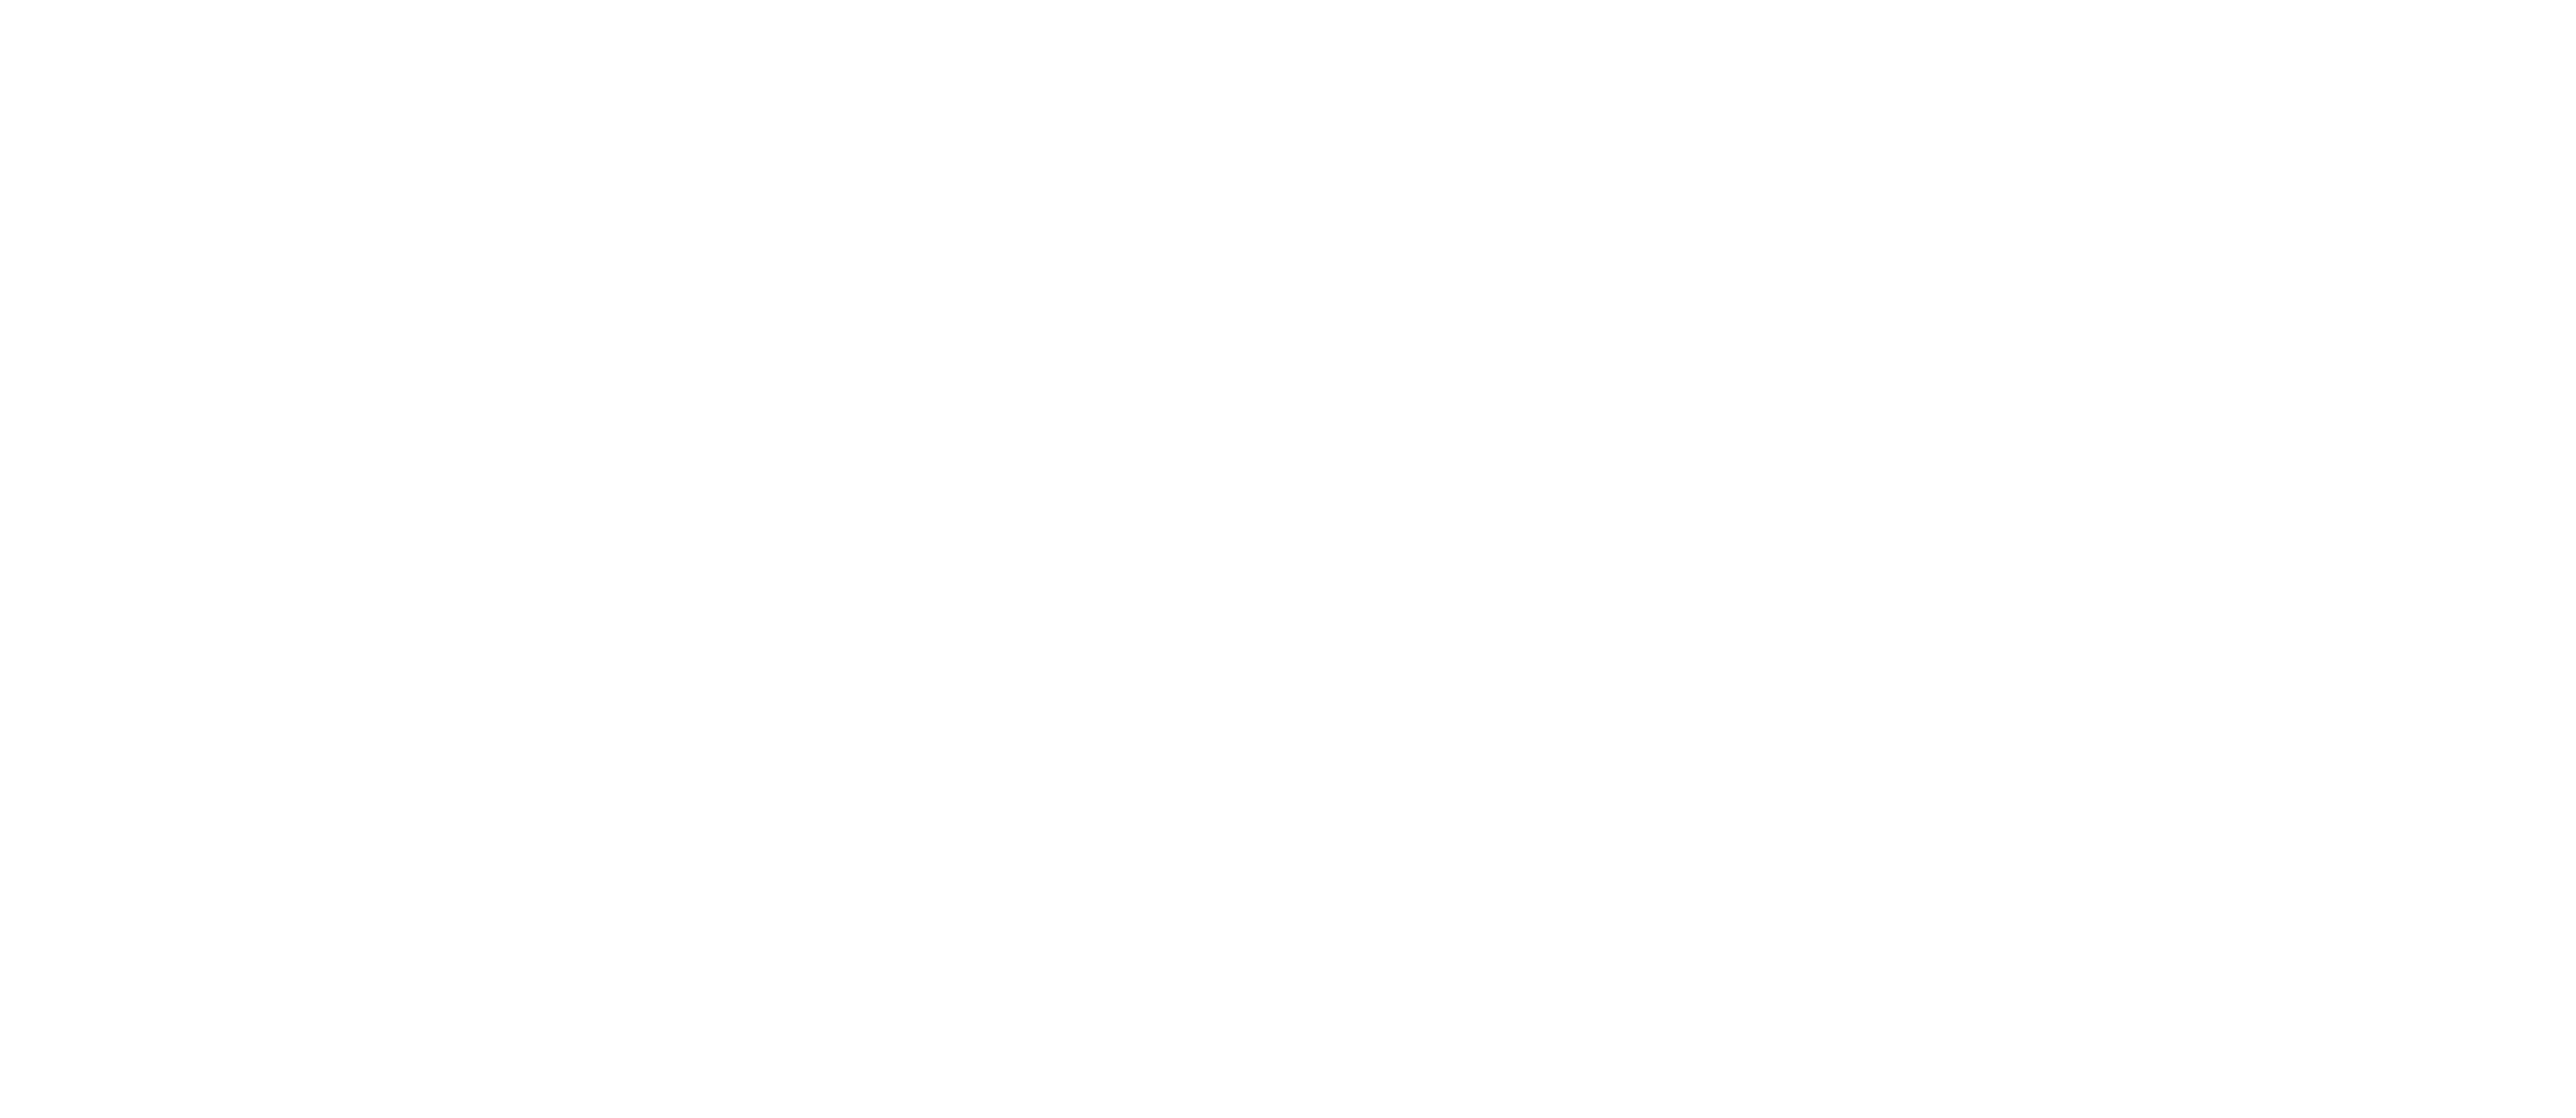 CØLDWOOD Logo